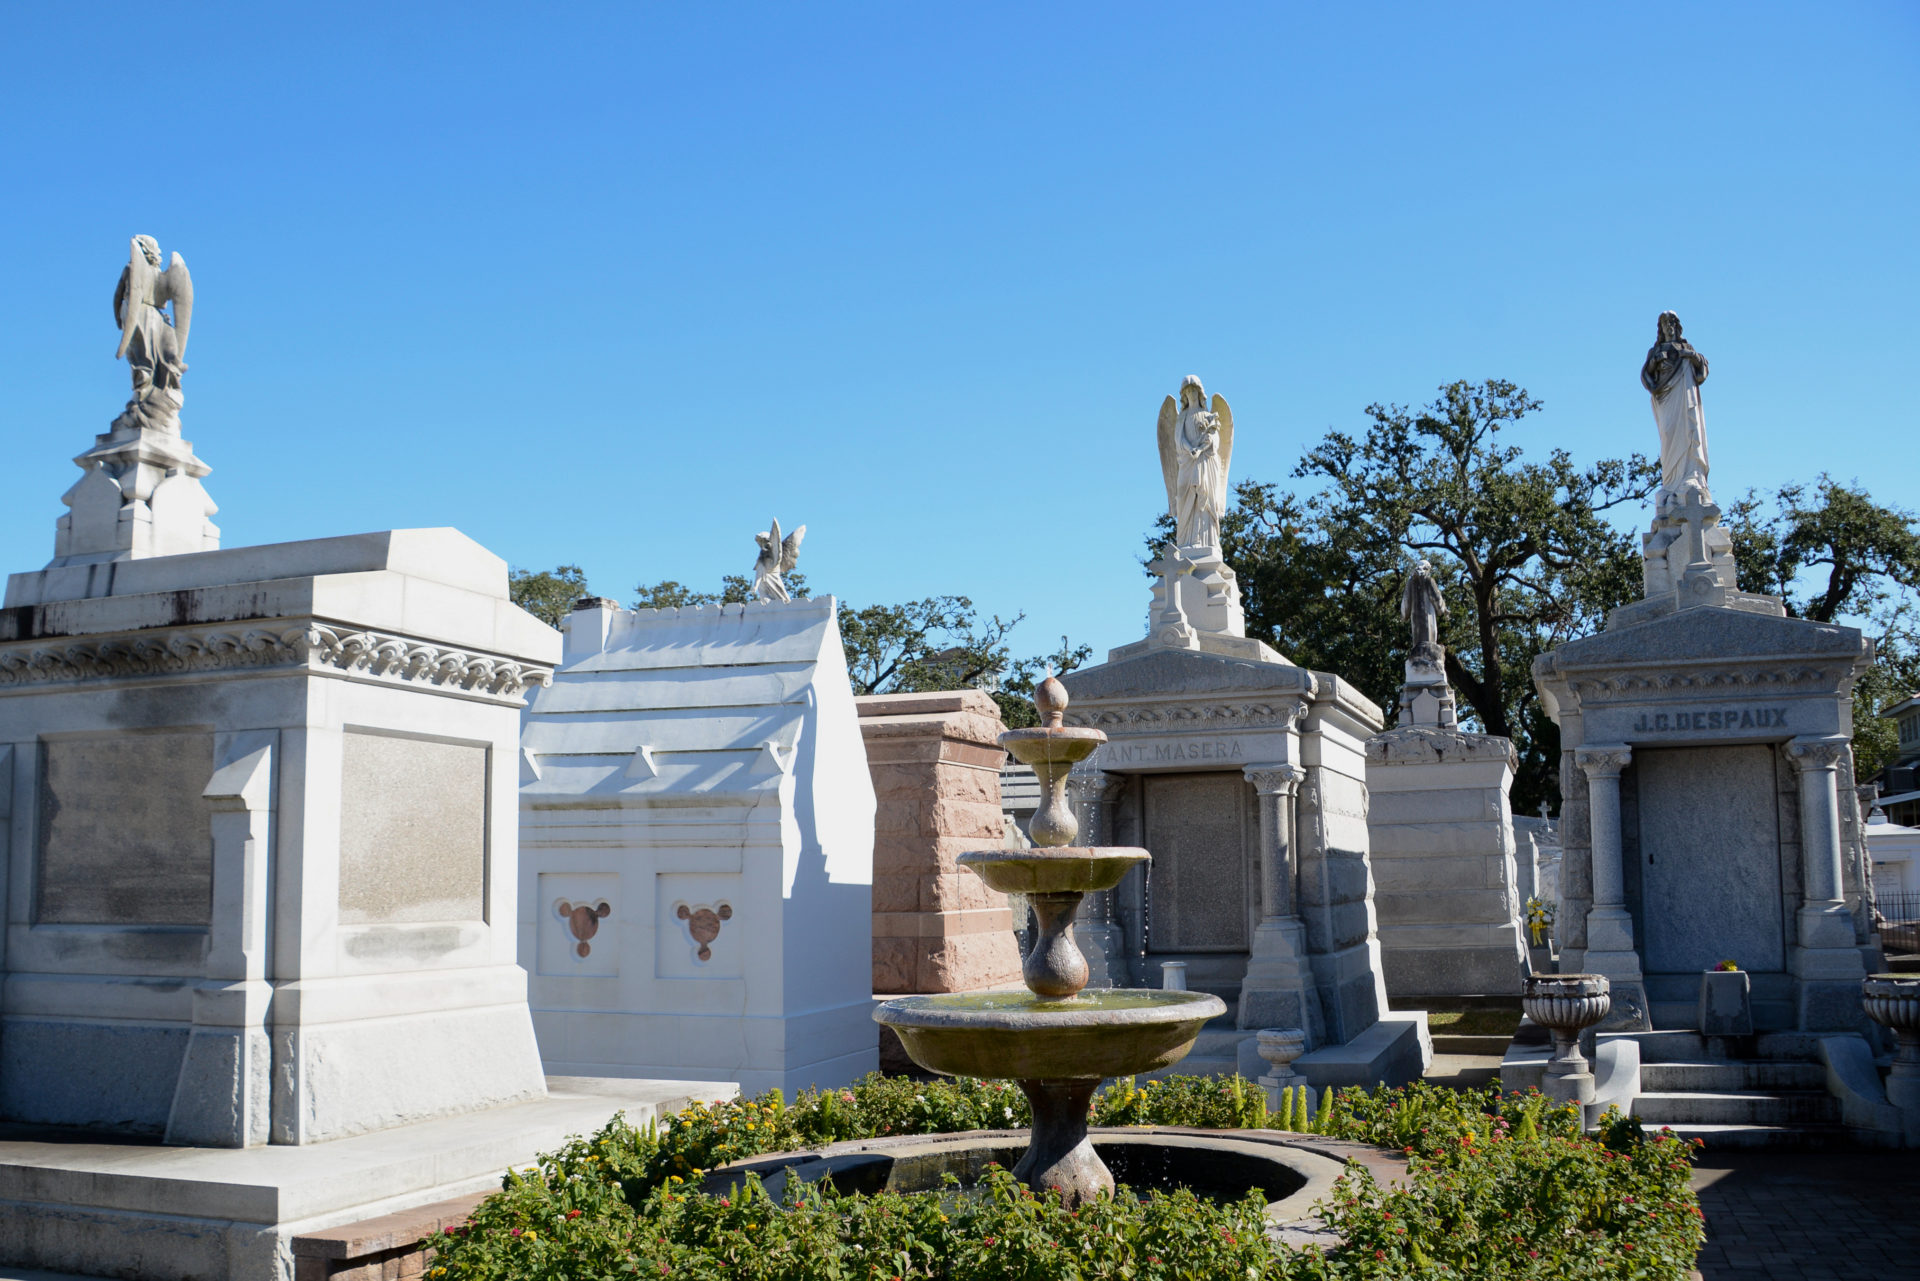 Grabsteine und Musoleen auf dem Friedhof St. Louis 3 in New Orleans